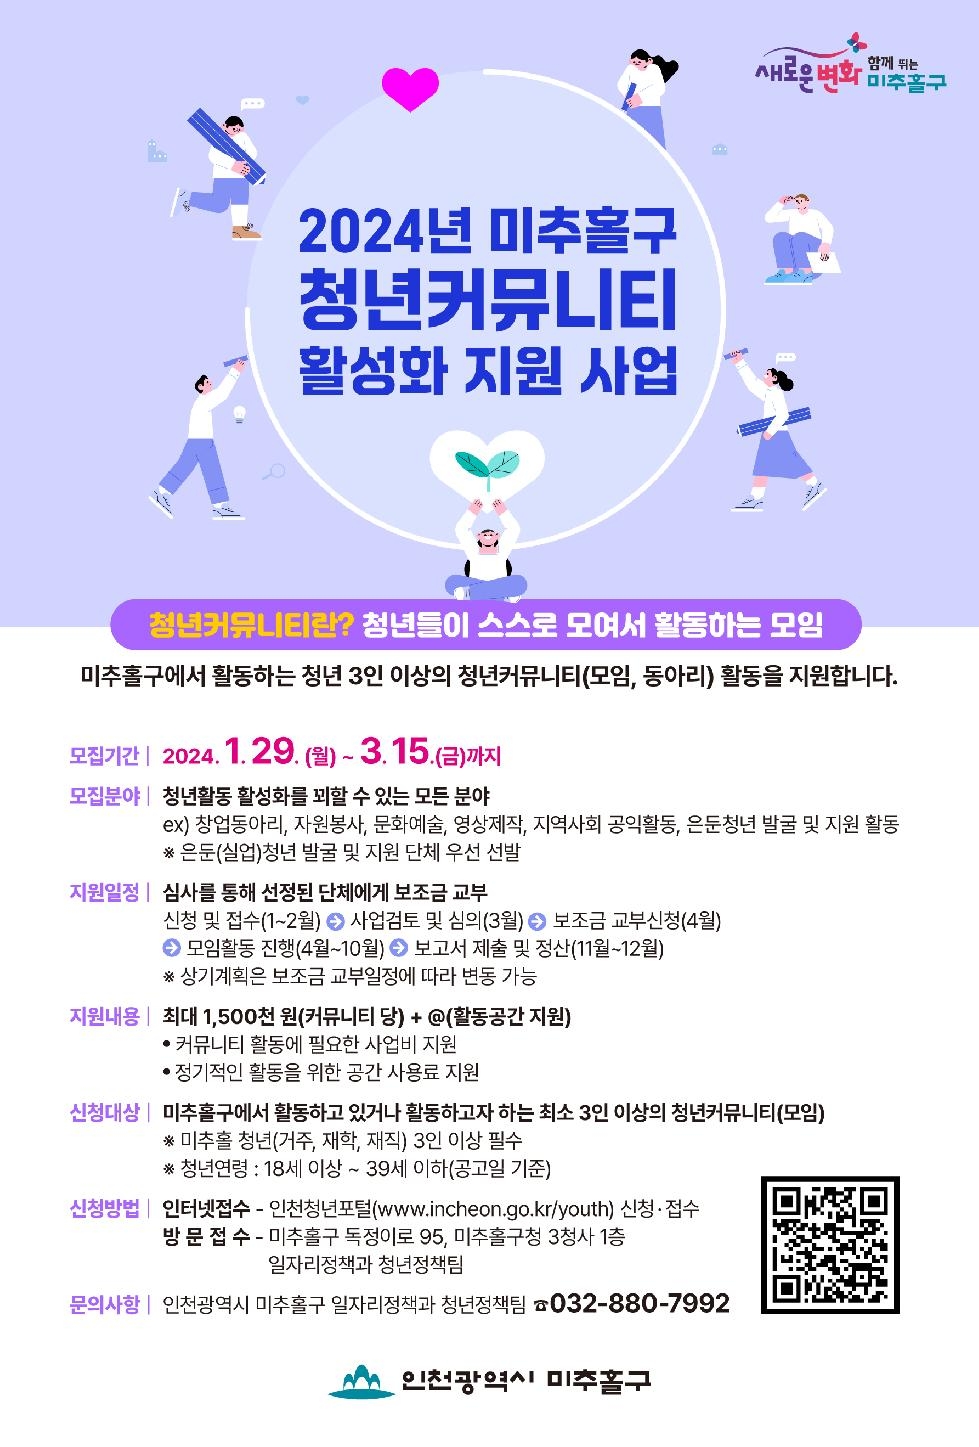 인천 미추홀구, ‘2024년 청년 커뮤니티 활성화 지원 사업’ 참여 단체